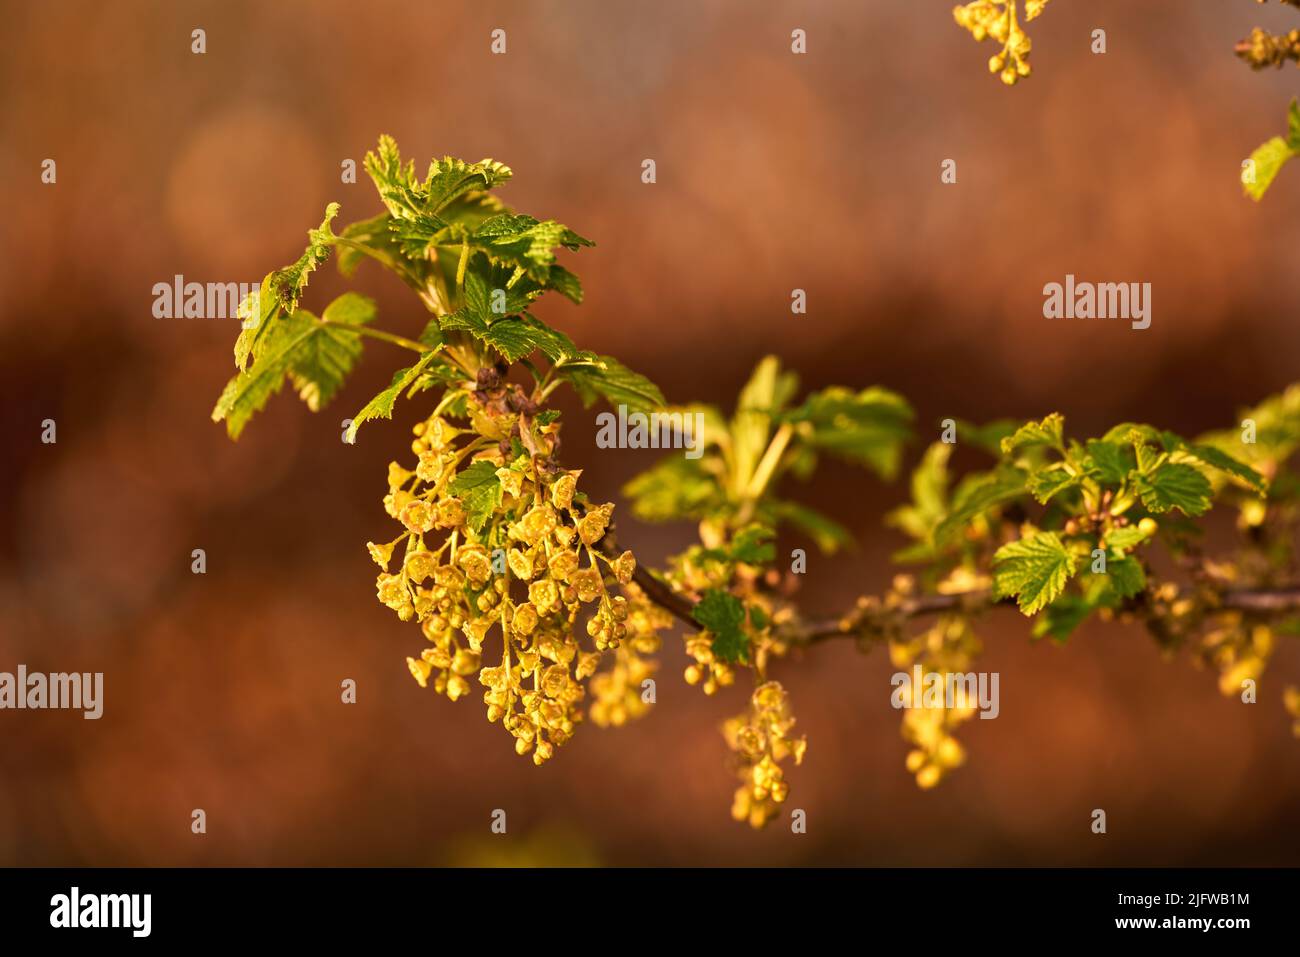 Makroaufnahme der blühenden gelb-grünen Blüten der roten Johannisbeeren und der kleinen blühenden Beeren auf dem Ast. Ein Portraitbild einer gelben Blume mit kleinen Stockfoto